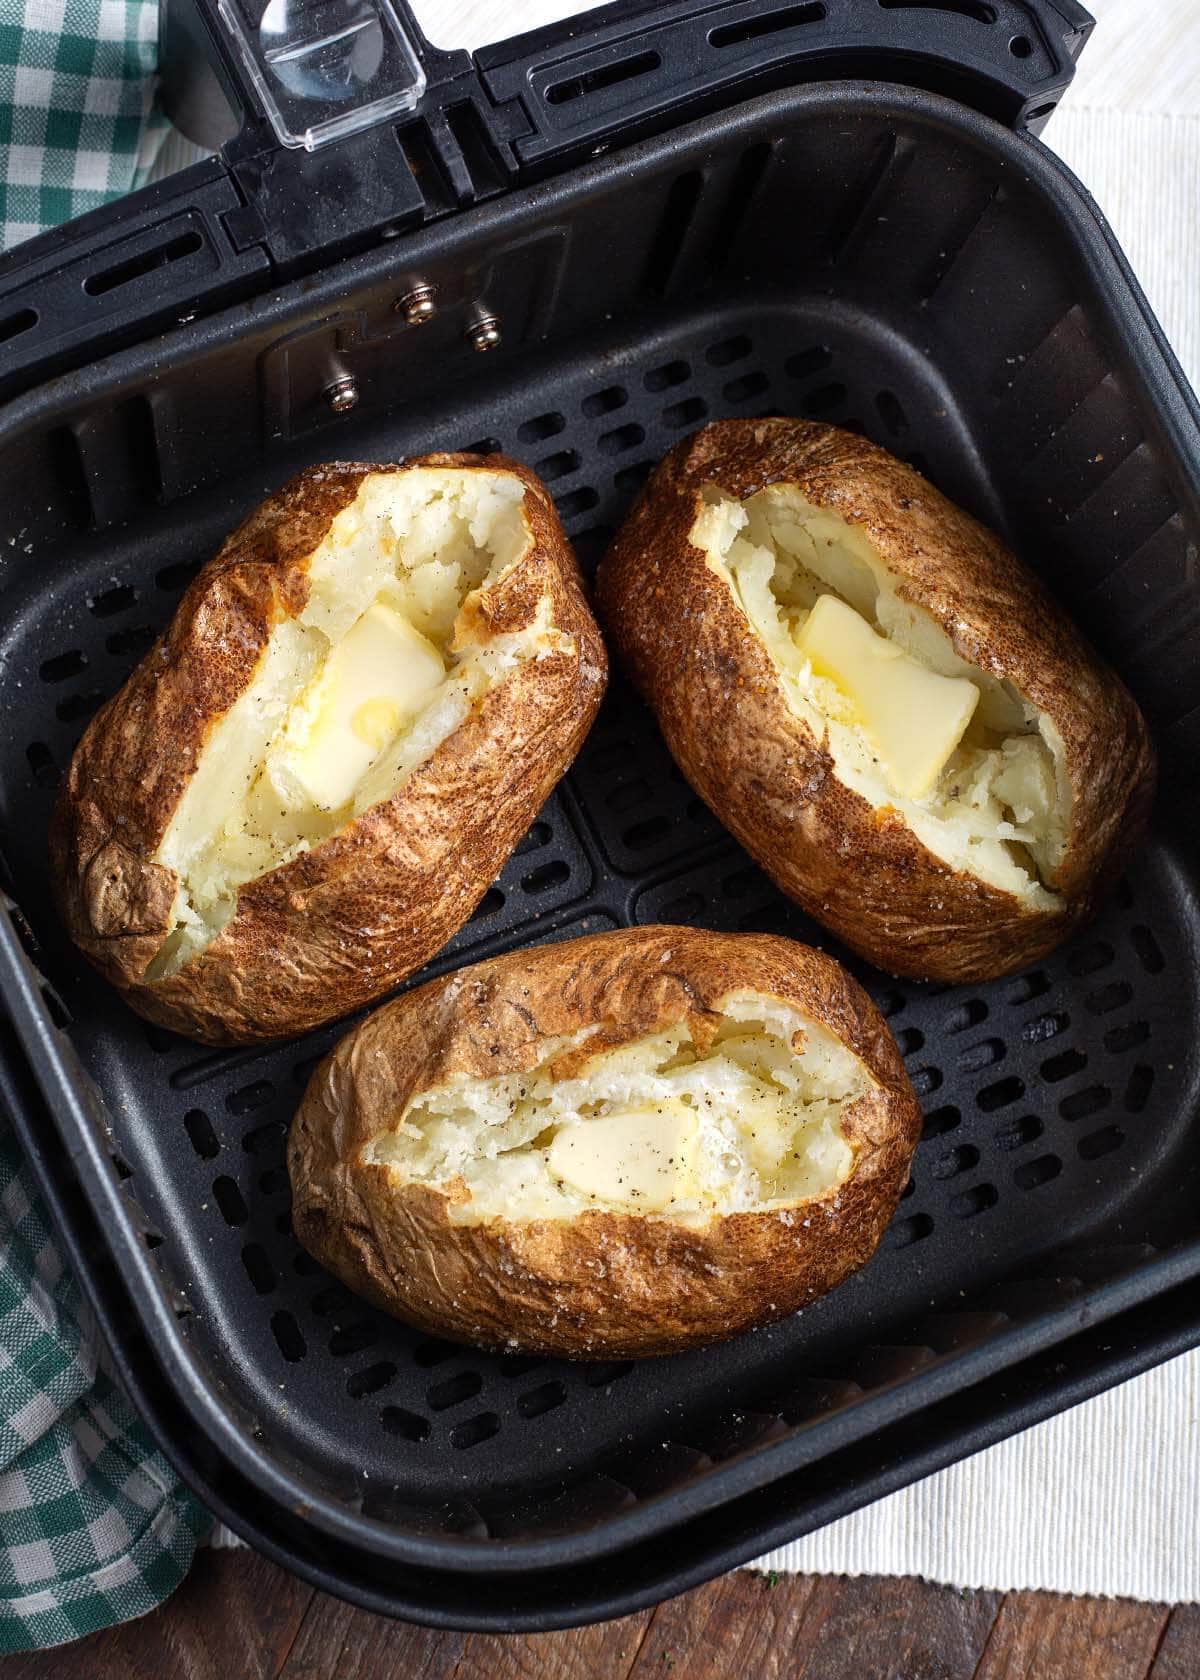 3 Air Fryer Baked Potatoes in basket.